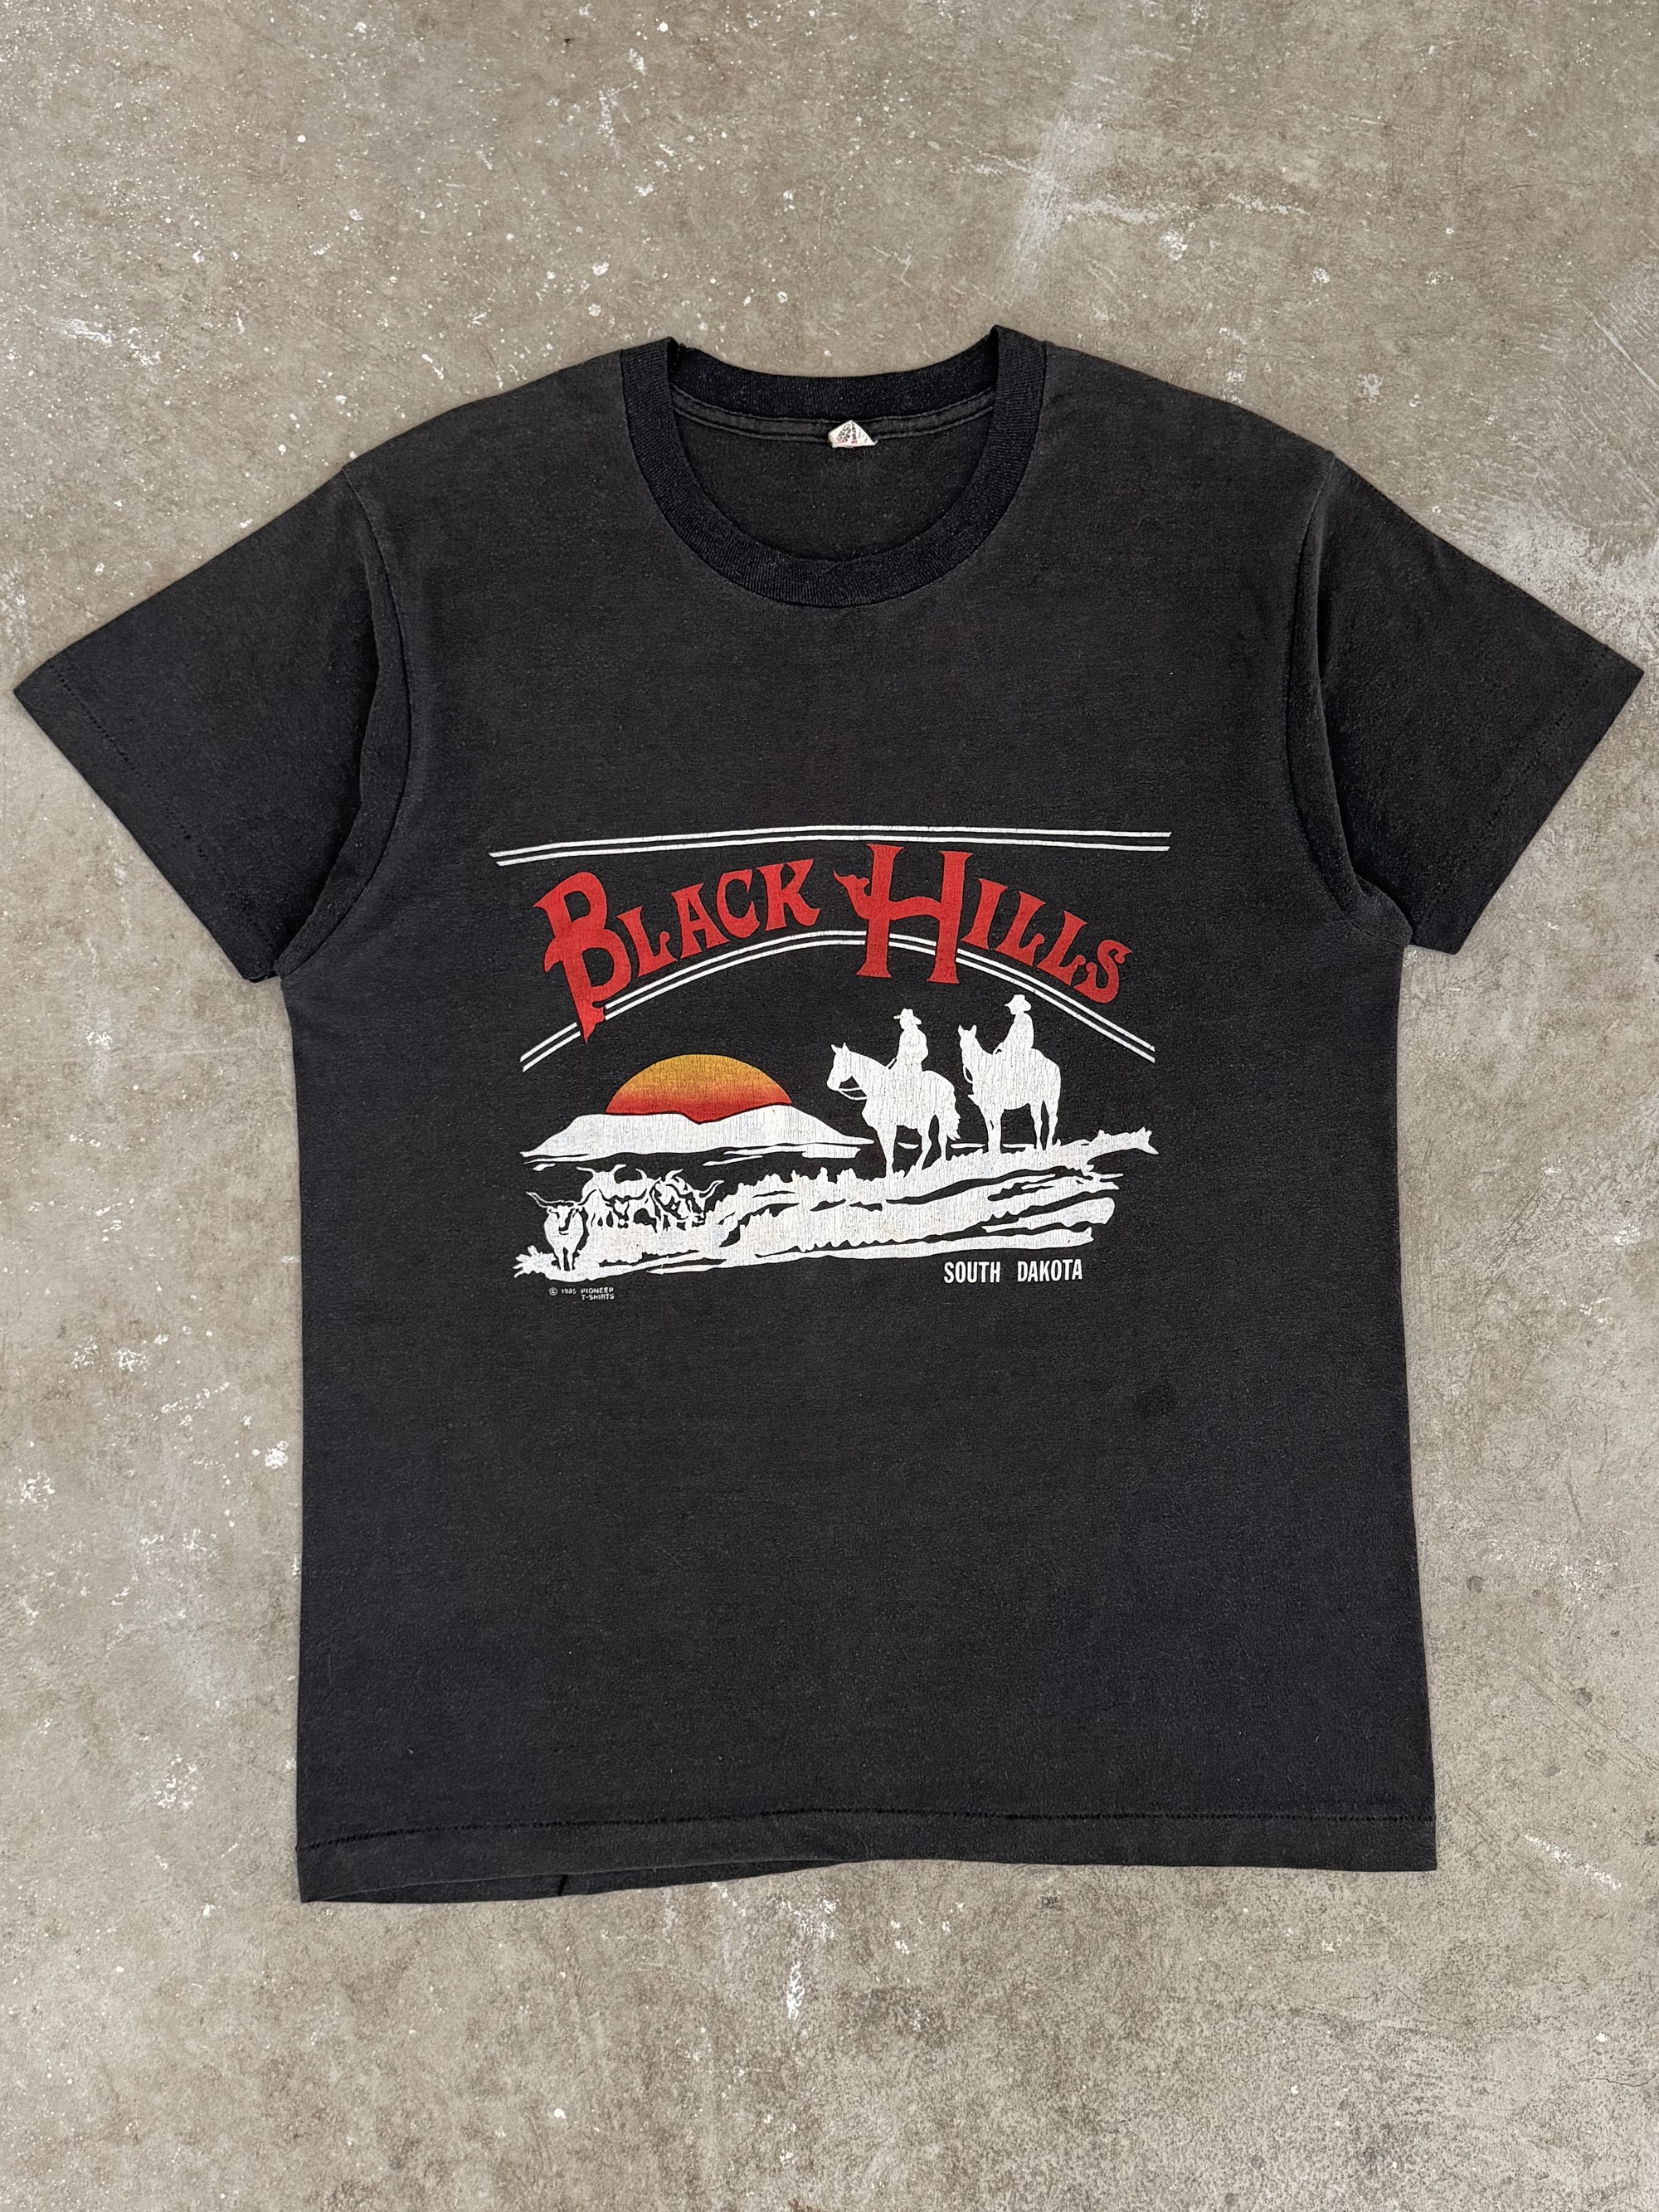 1980s "Black Hills" Tee (M/L)